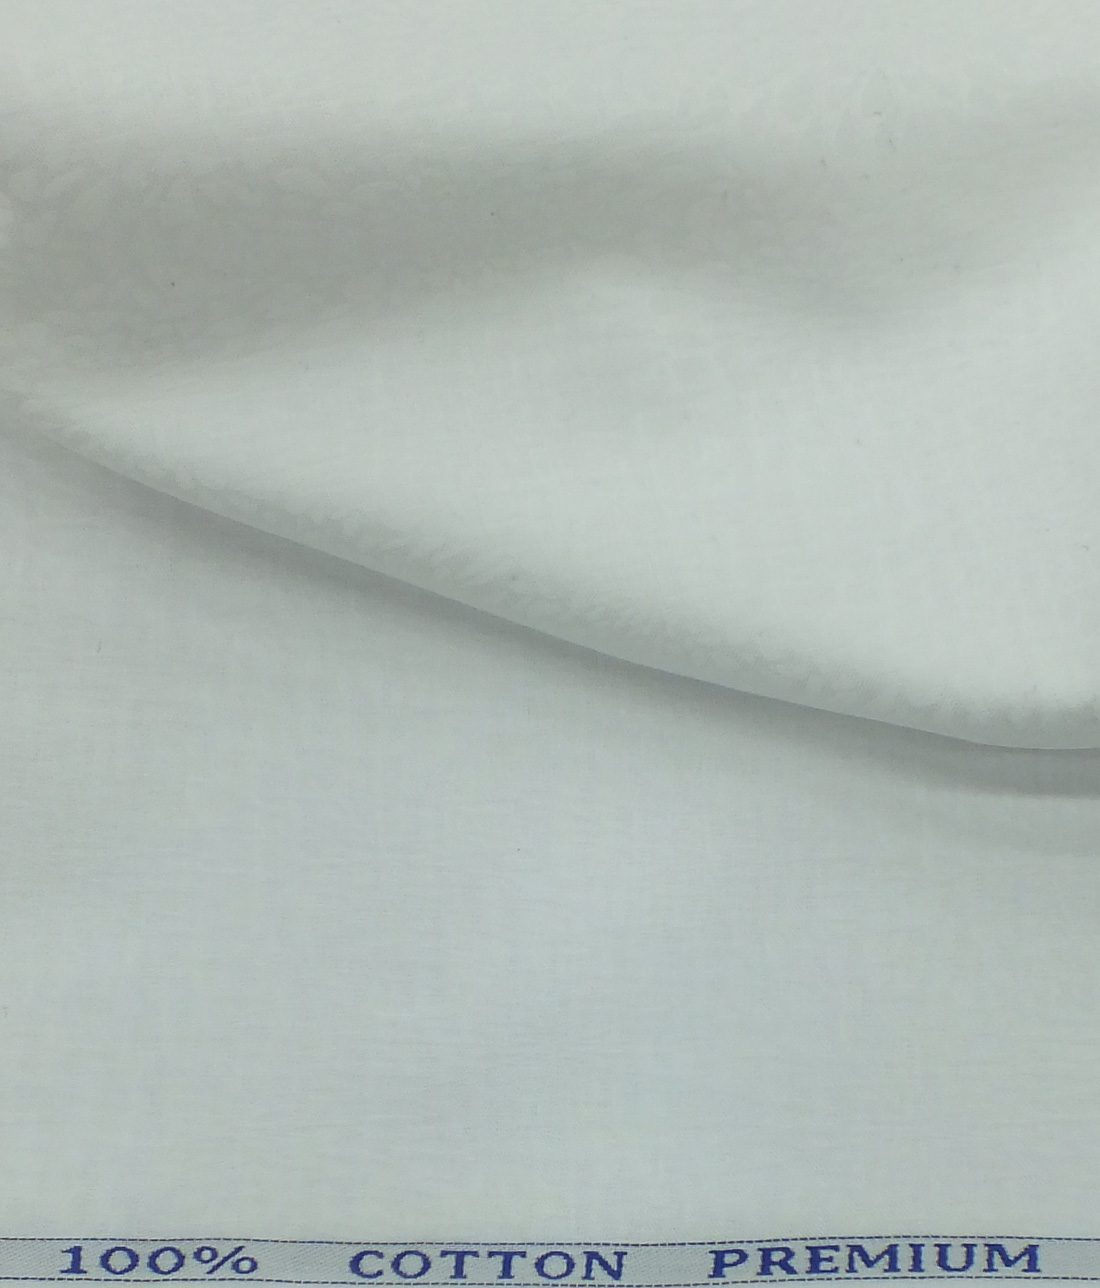 BVM White 100% Premium Cotton Floral Jacquard Structure Shirt Fabric (1 ...